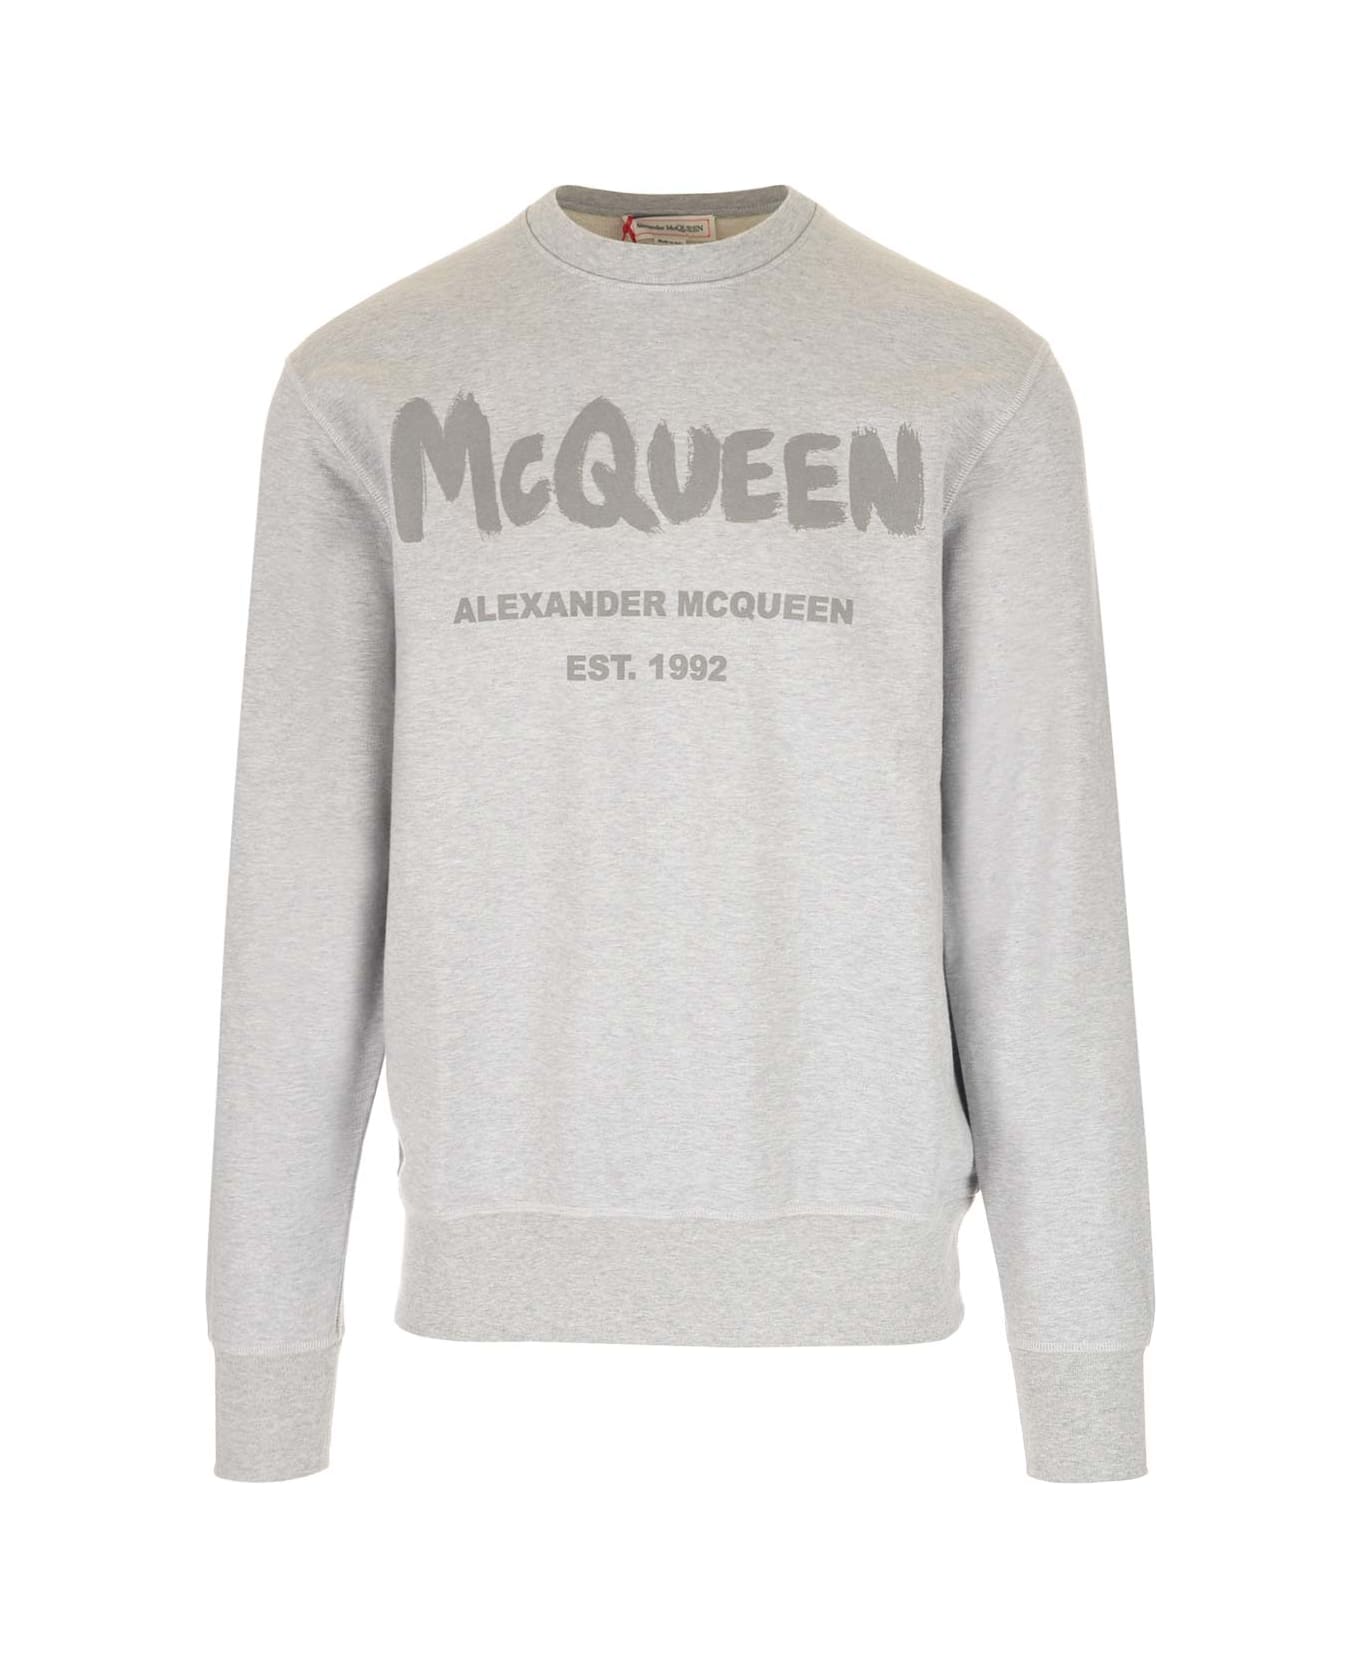 Alexander McQueen Sweater - Grey